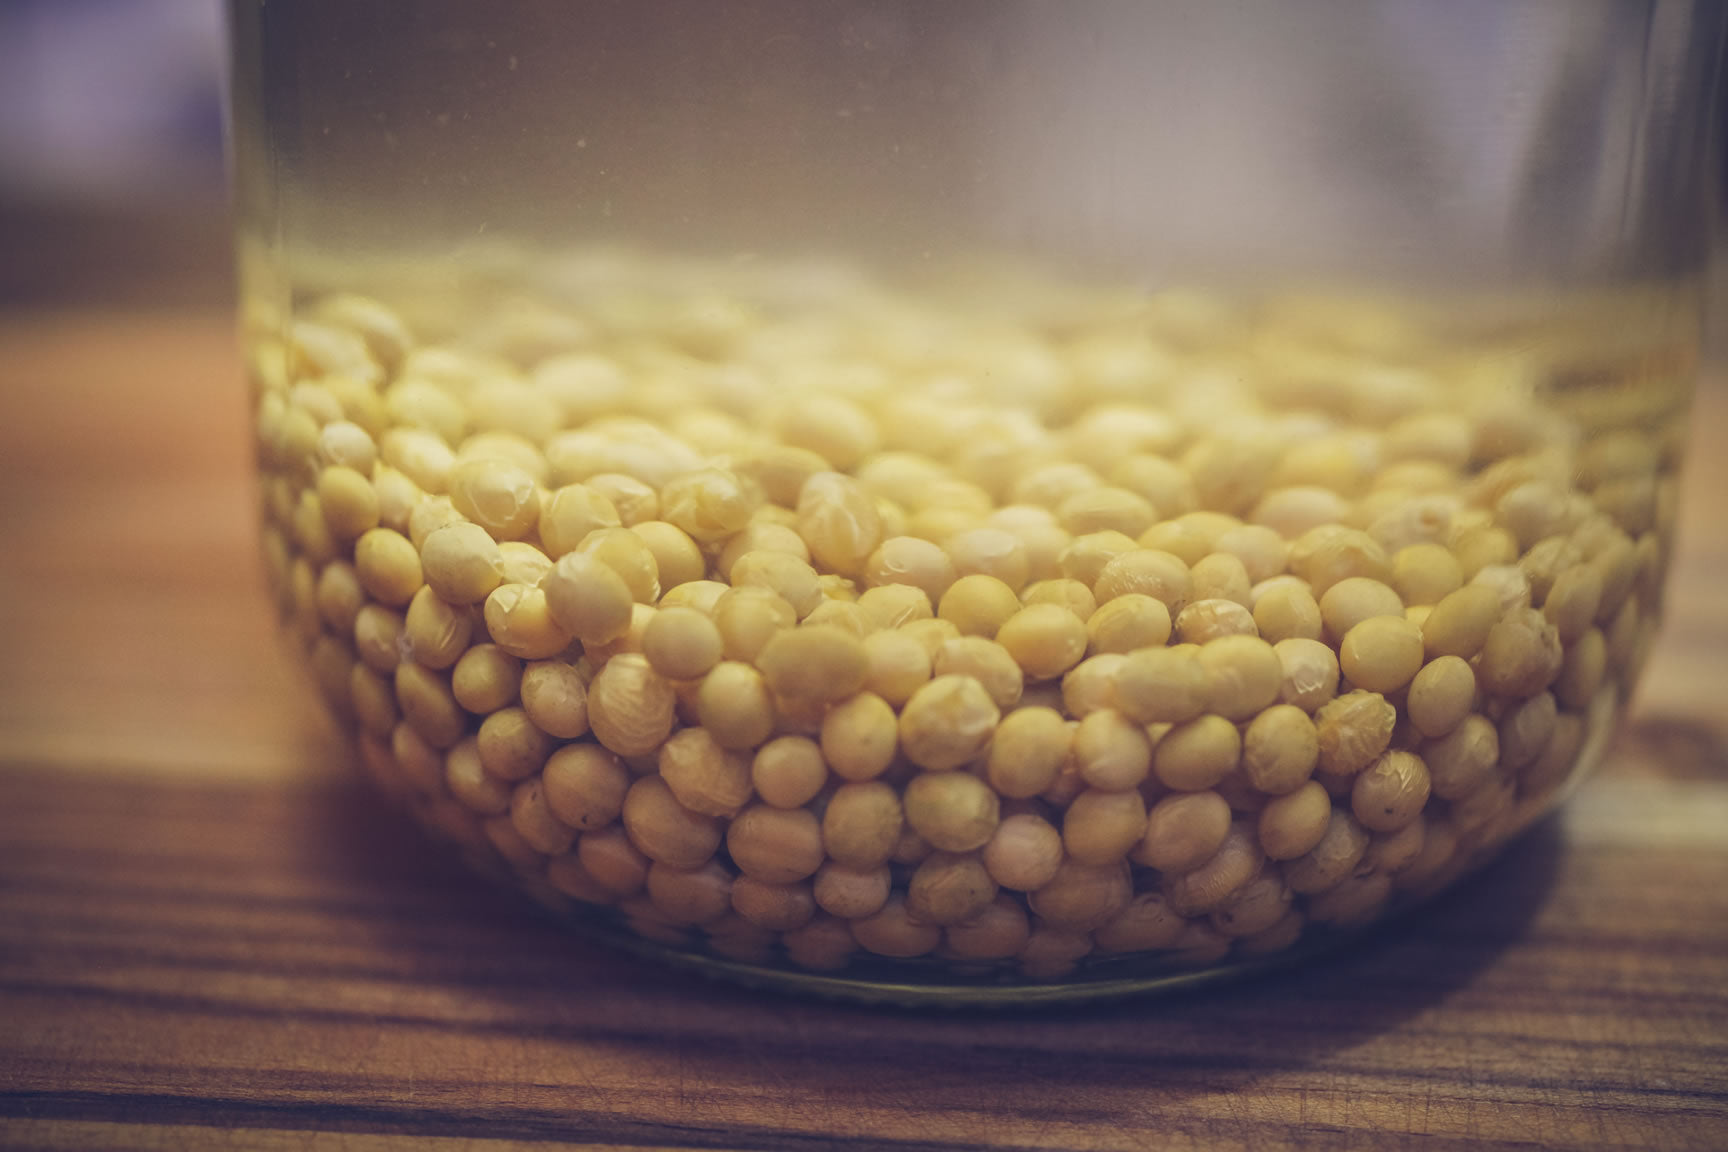 soak dry soybeans